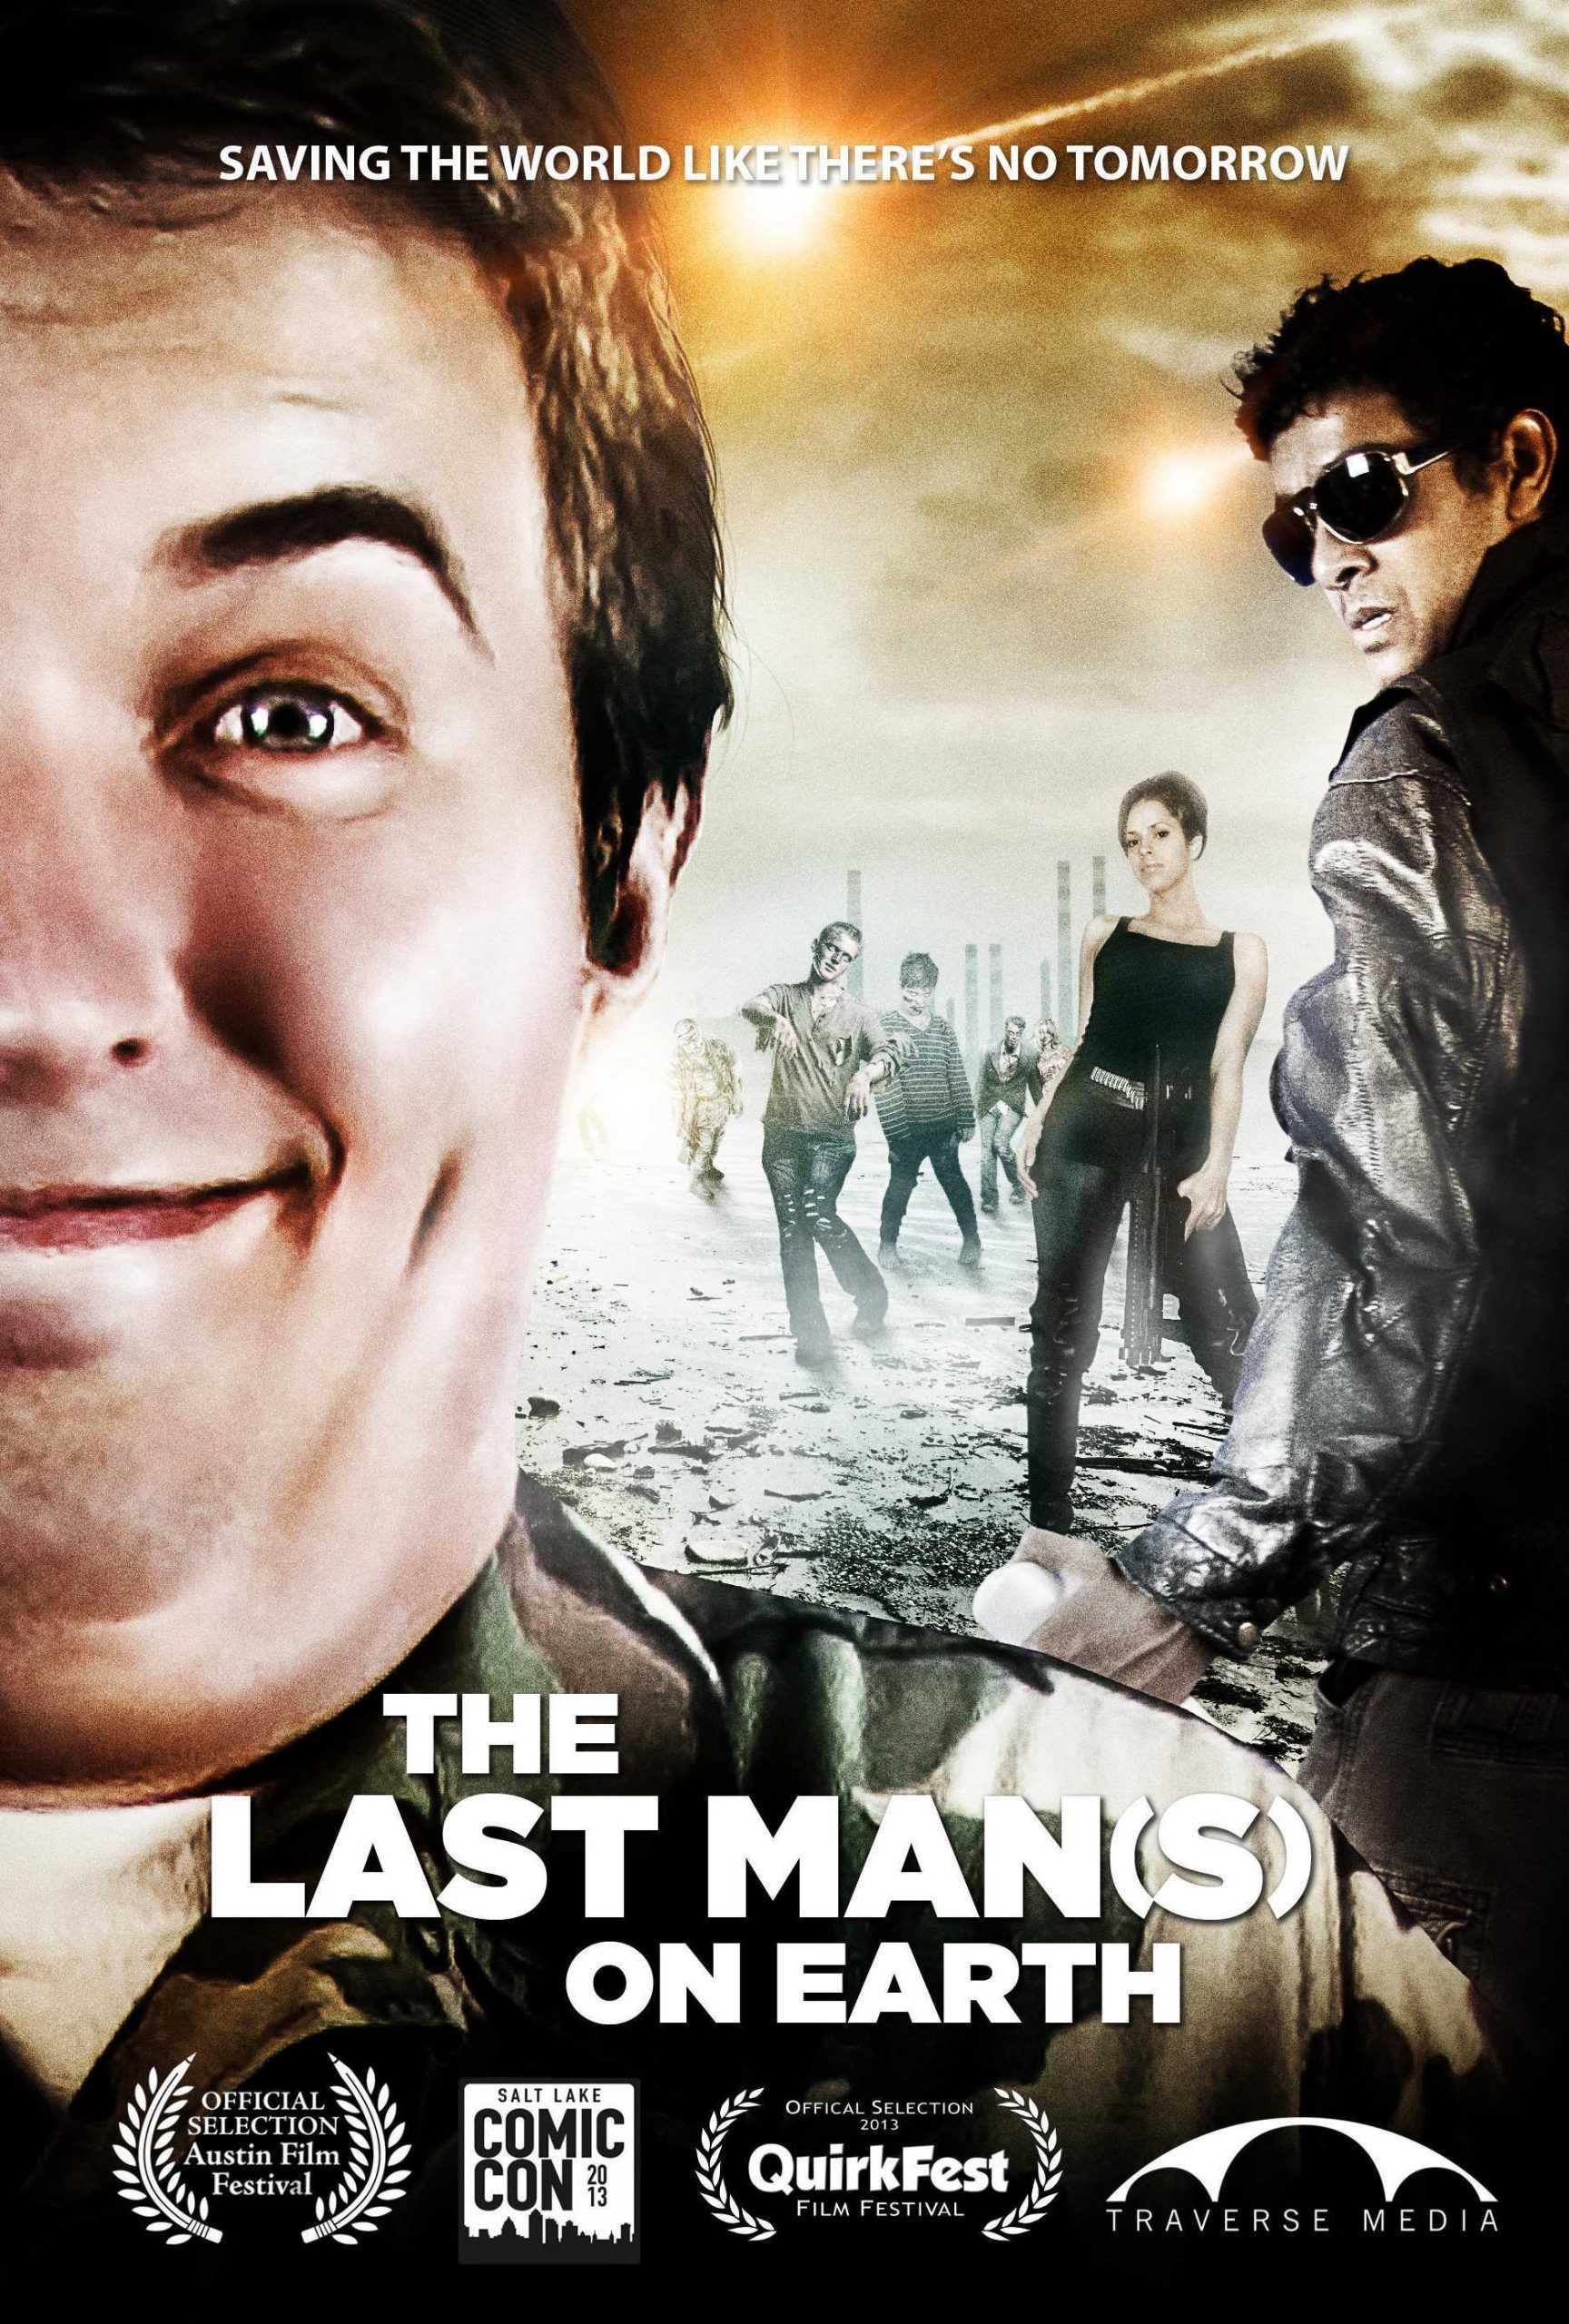 The Last Movie (2012) - IMDb